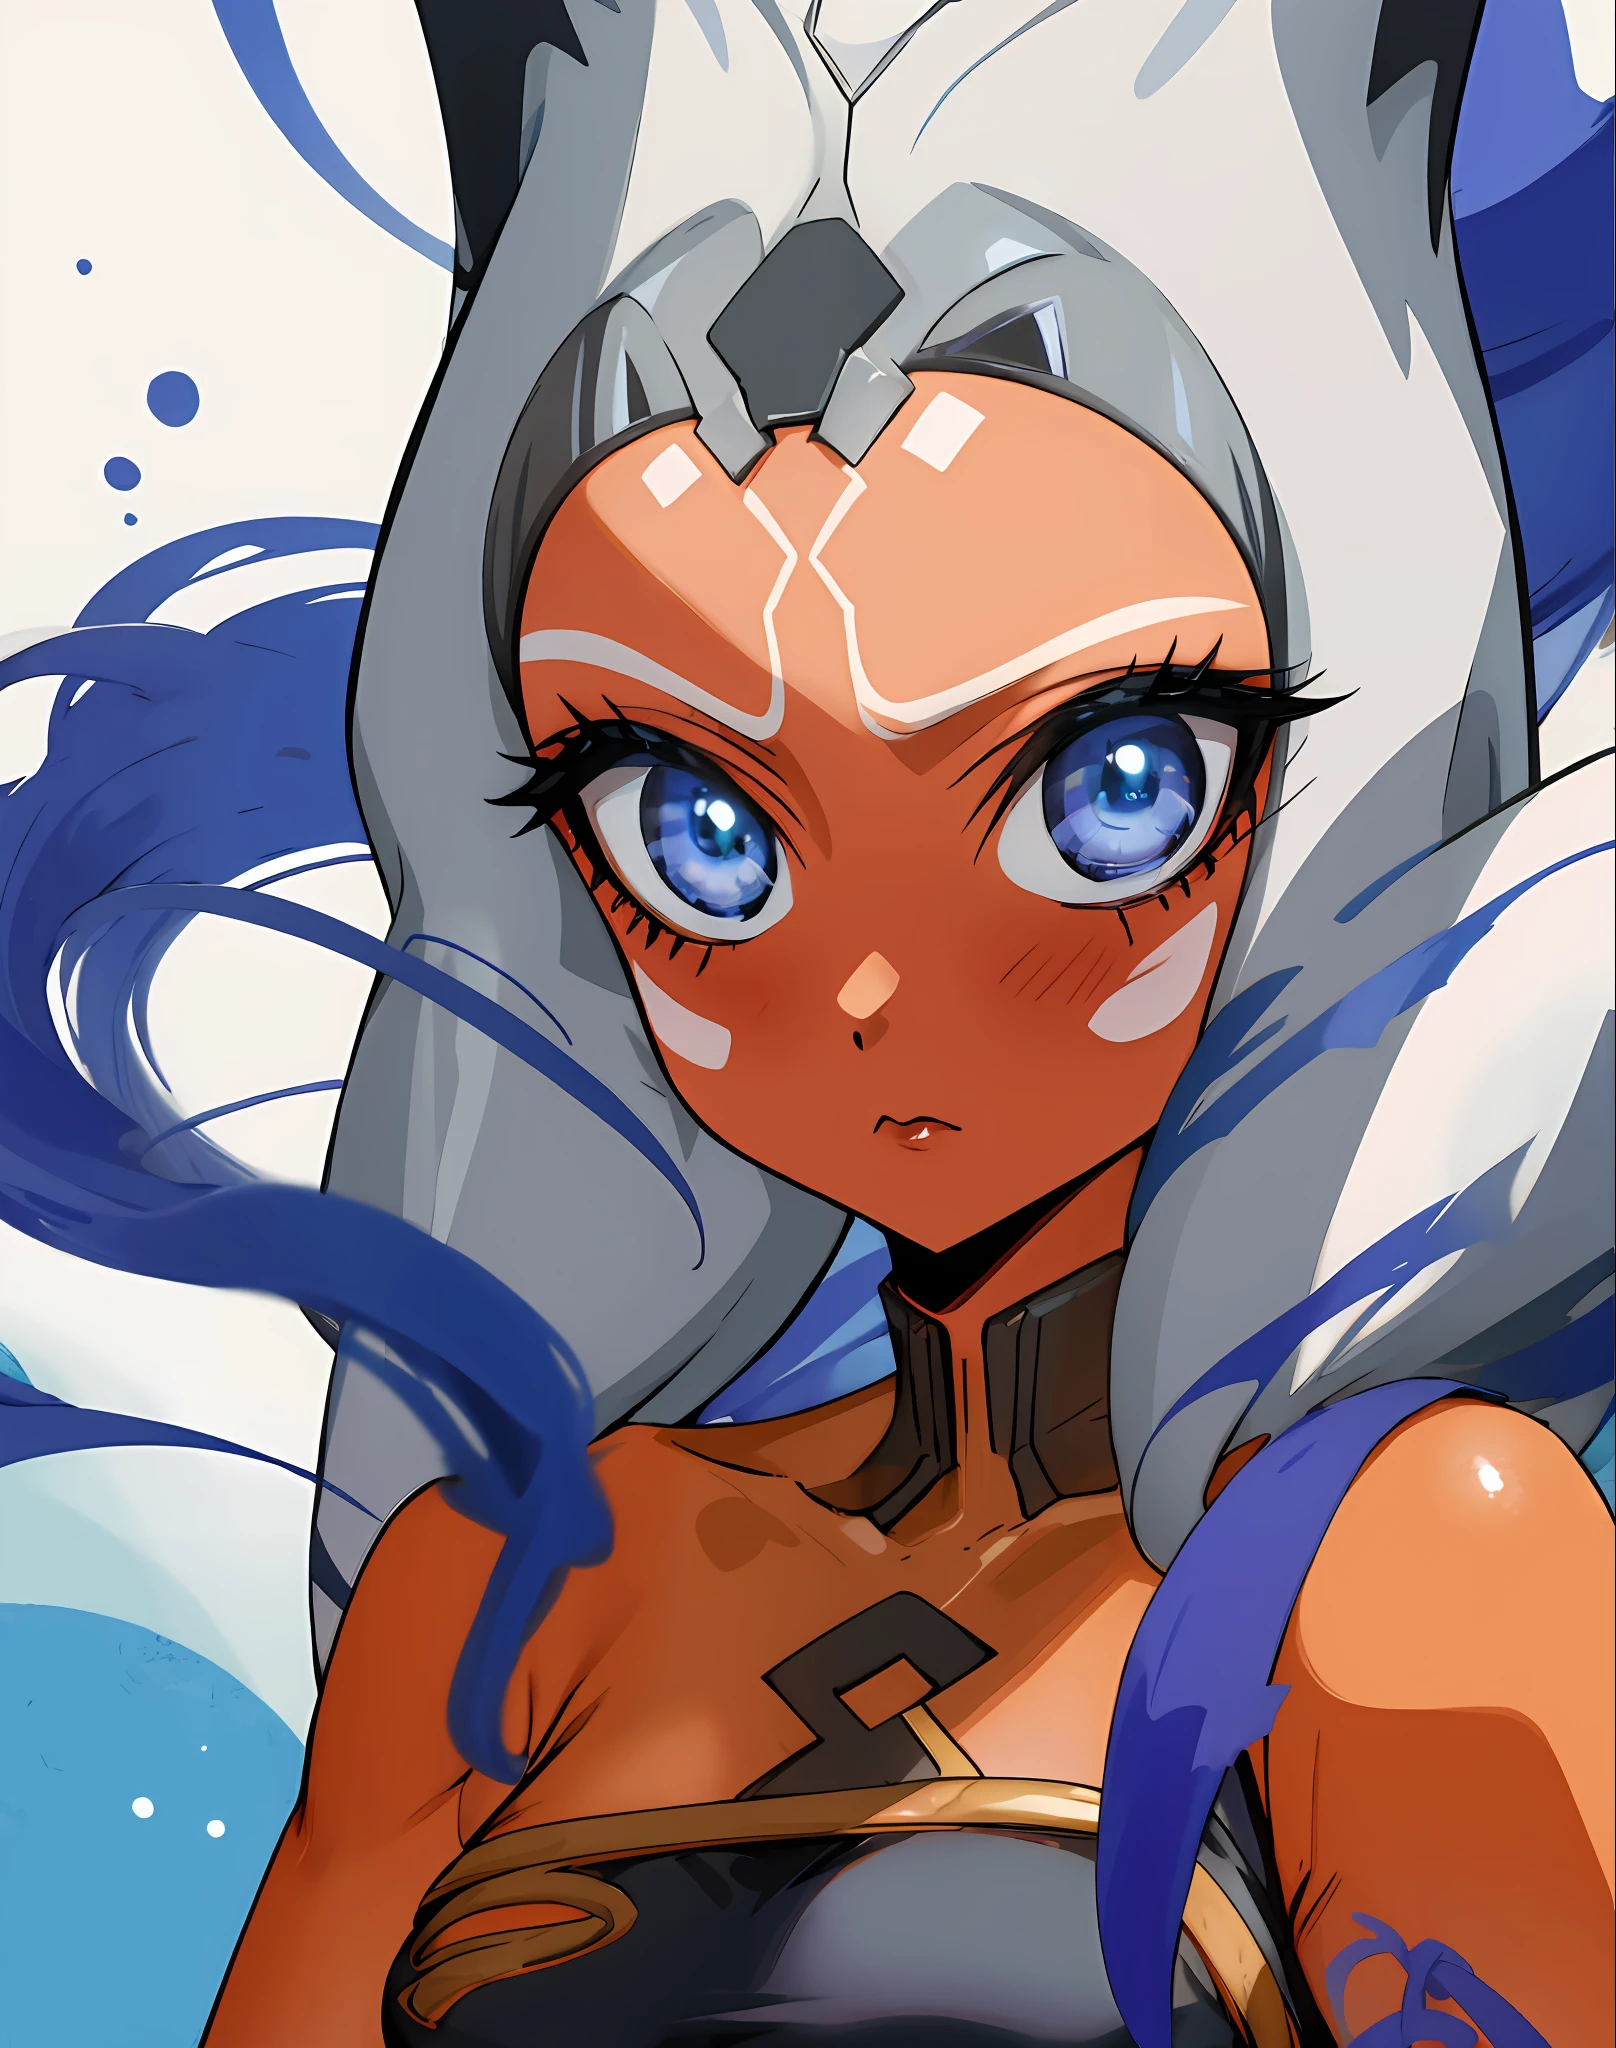 여자 1명, 파란 눈, 오렌지색 피부, 촉수 머리카락 비스크돌 애니메이션 스타일